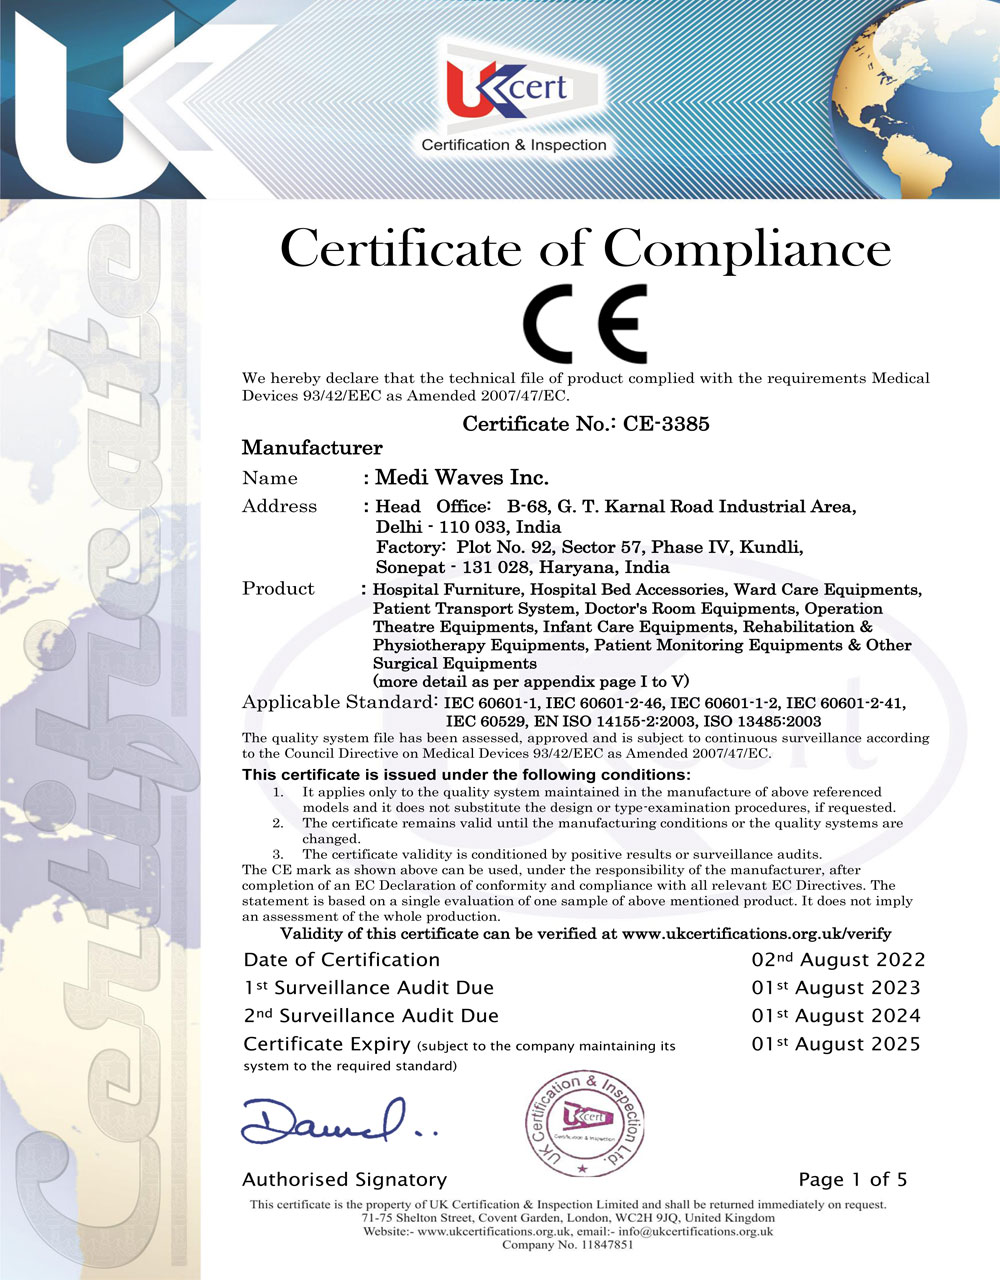 Certificate of Compliance CE:3385